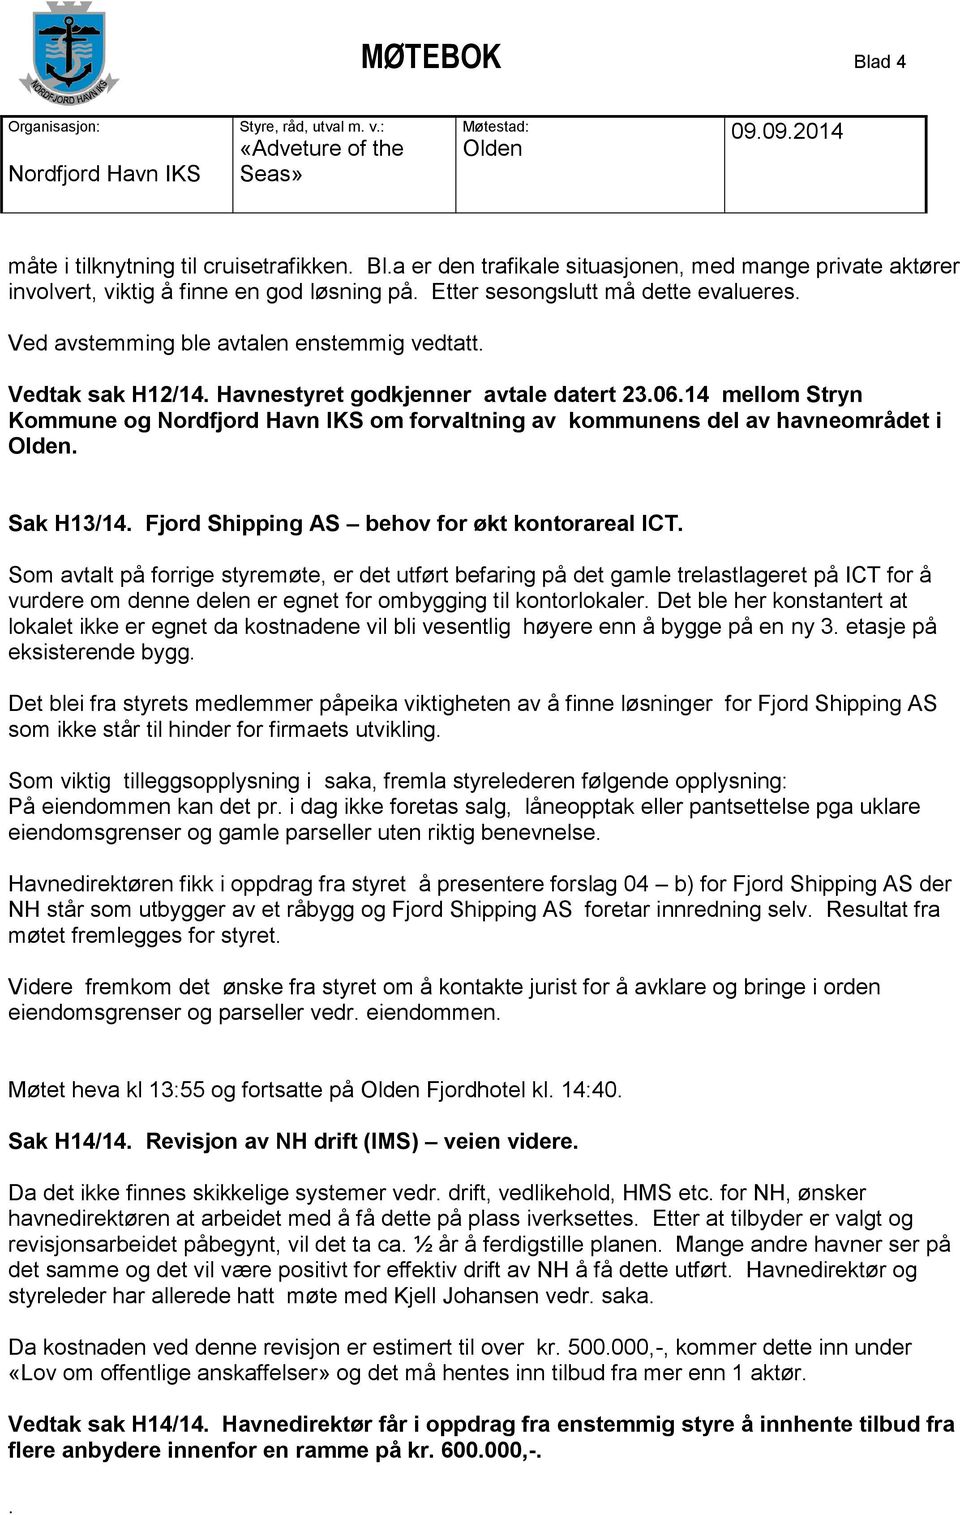 Sak H13/14 Fjord Shipping AS behov for økt kontorareal ICT Som avtalt på forrige styremøte, er det utført befaring på det gamle trelastlageret på ICT for å vurdere om denne delen er egnet for